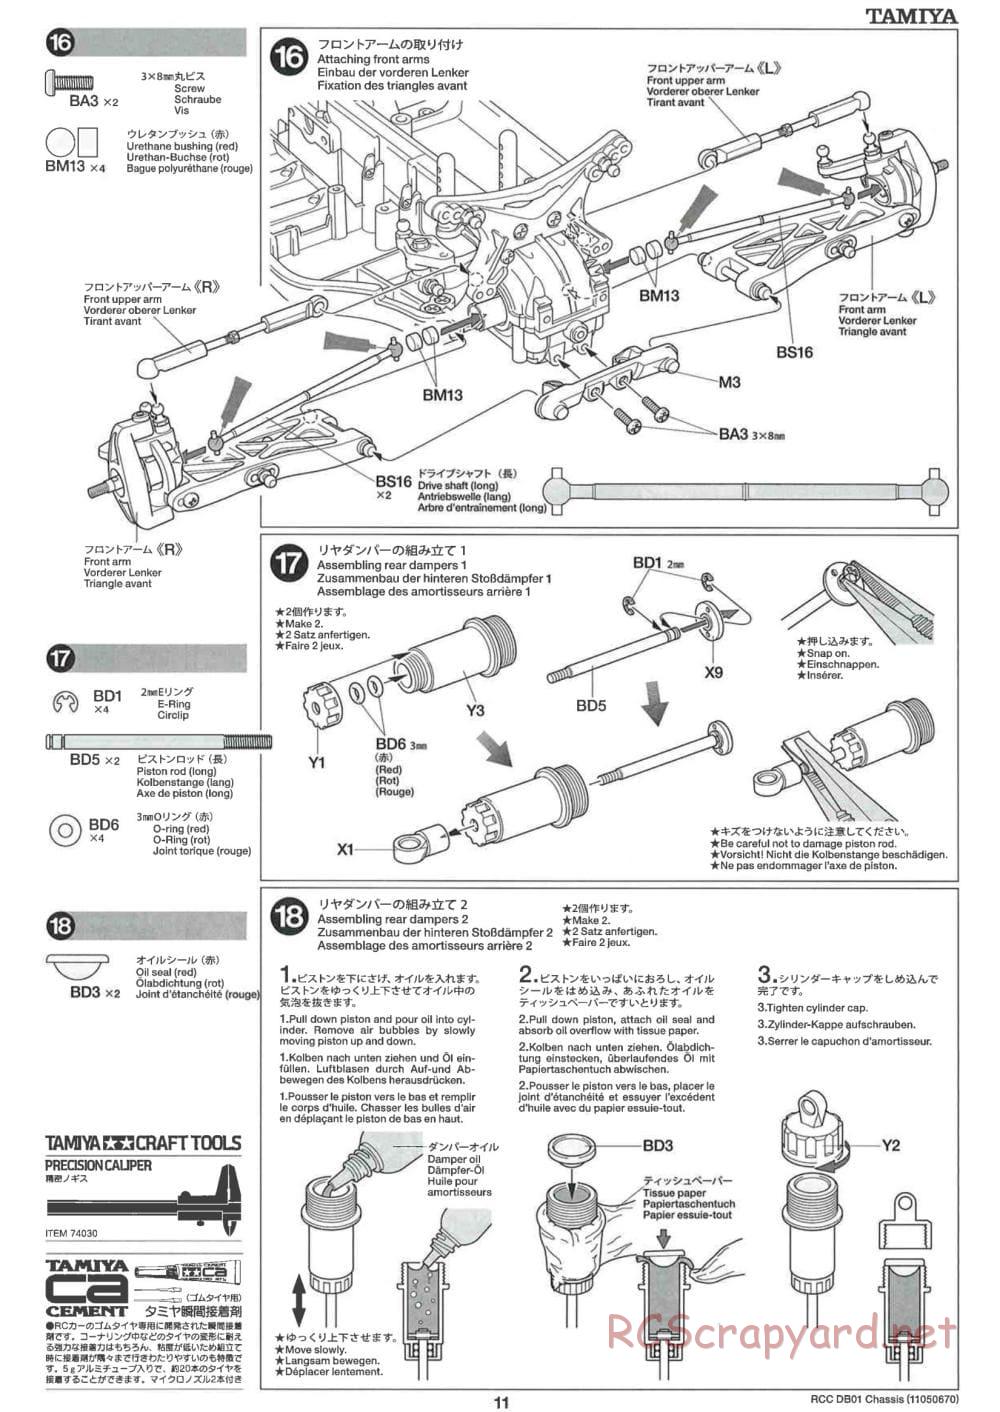 Tamiya - DB-01 Chassis - Manual - Page 11